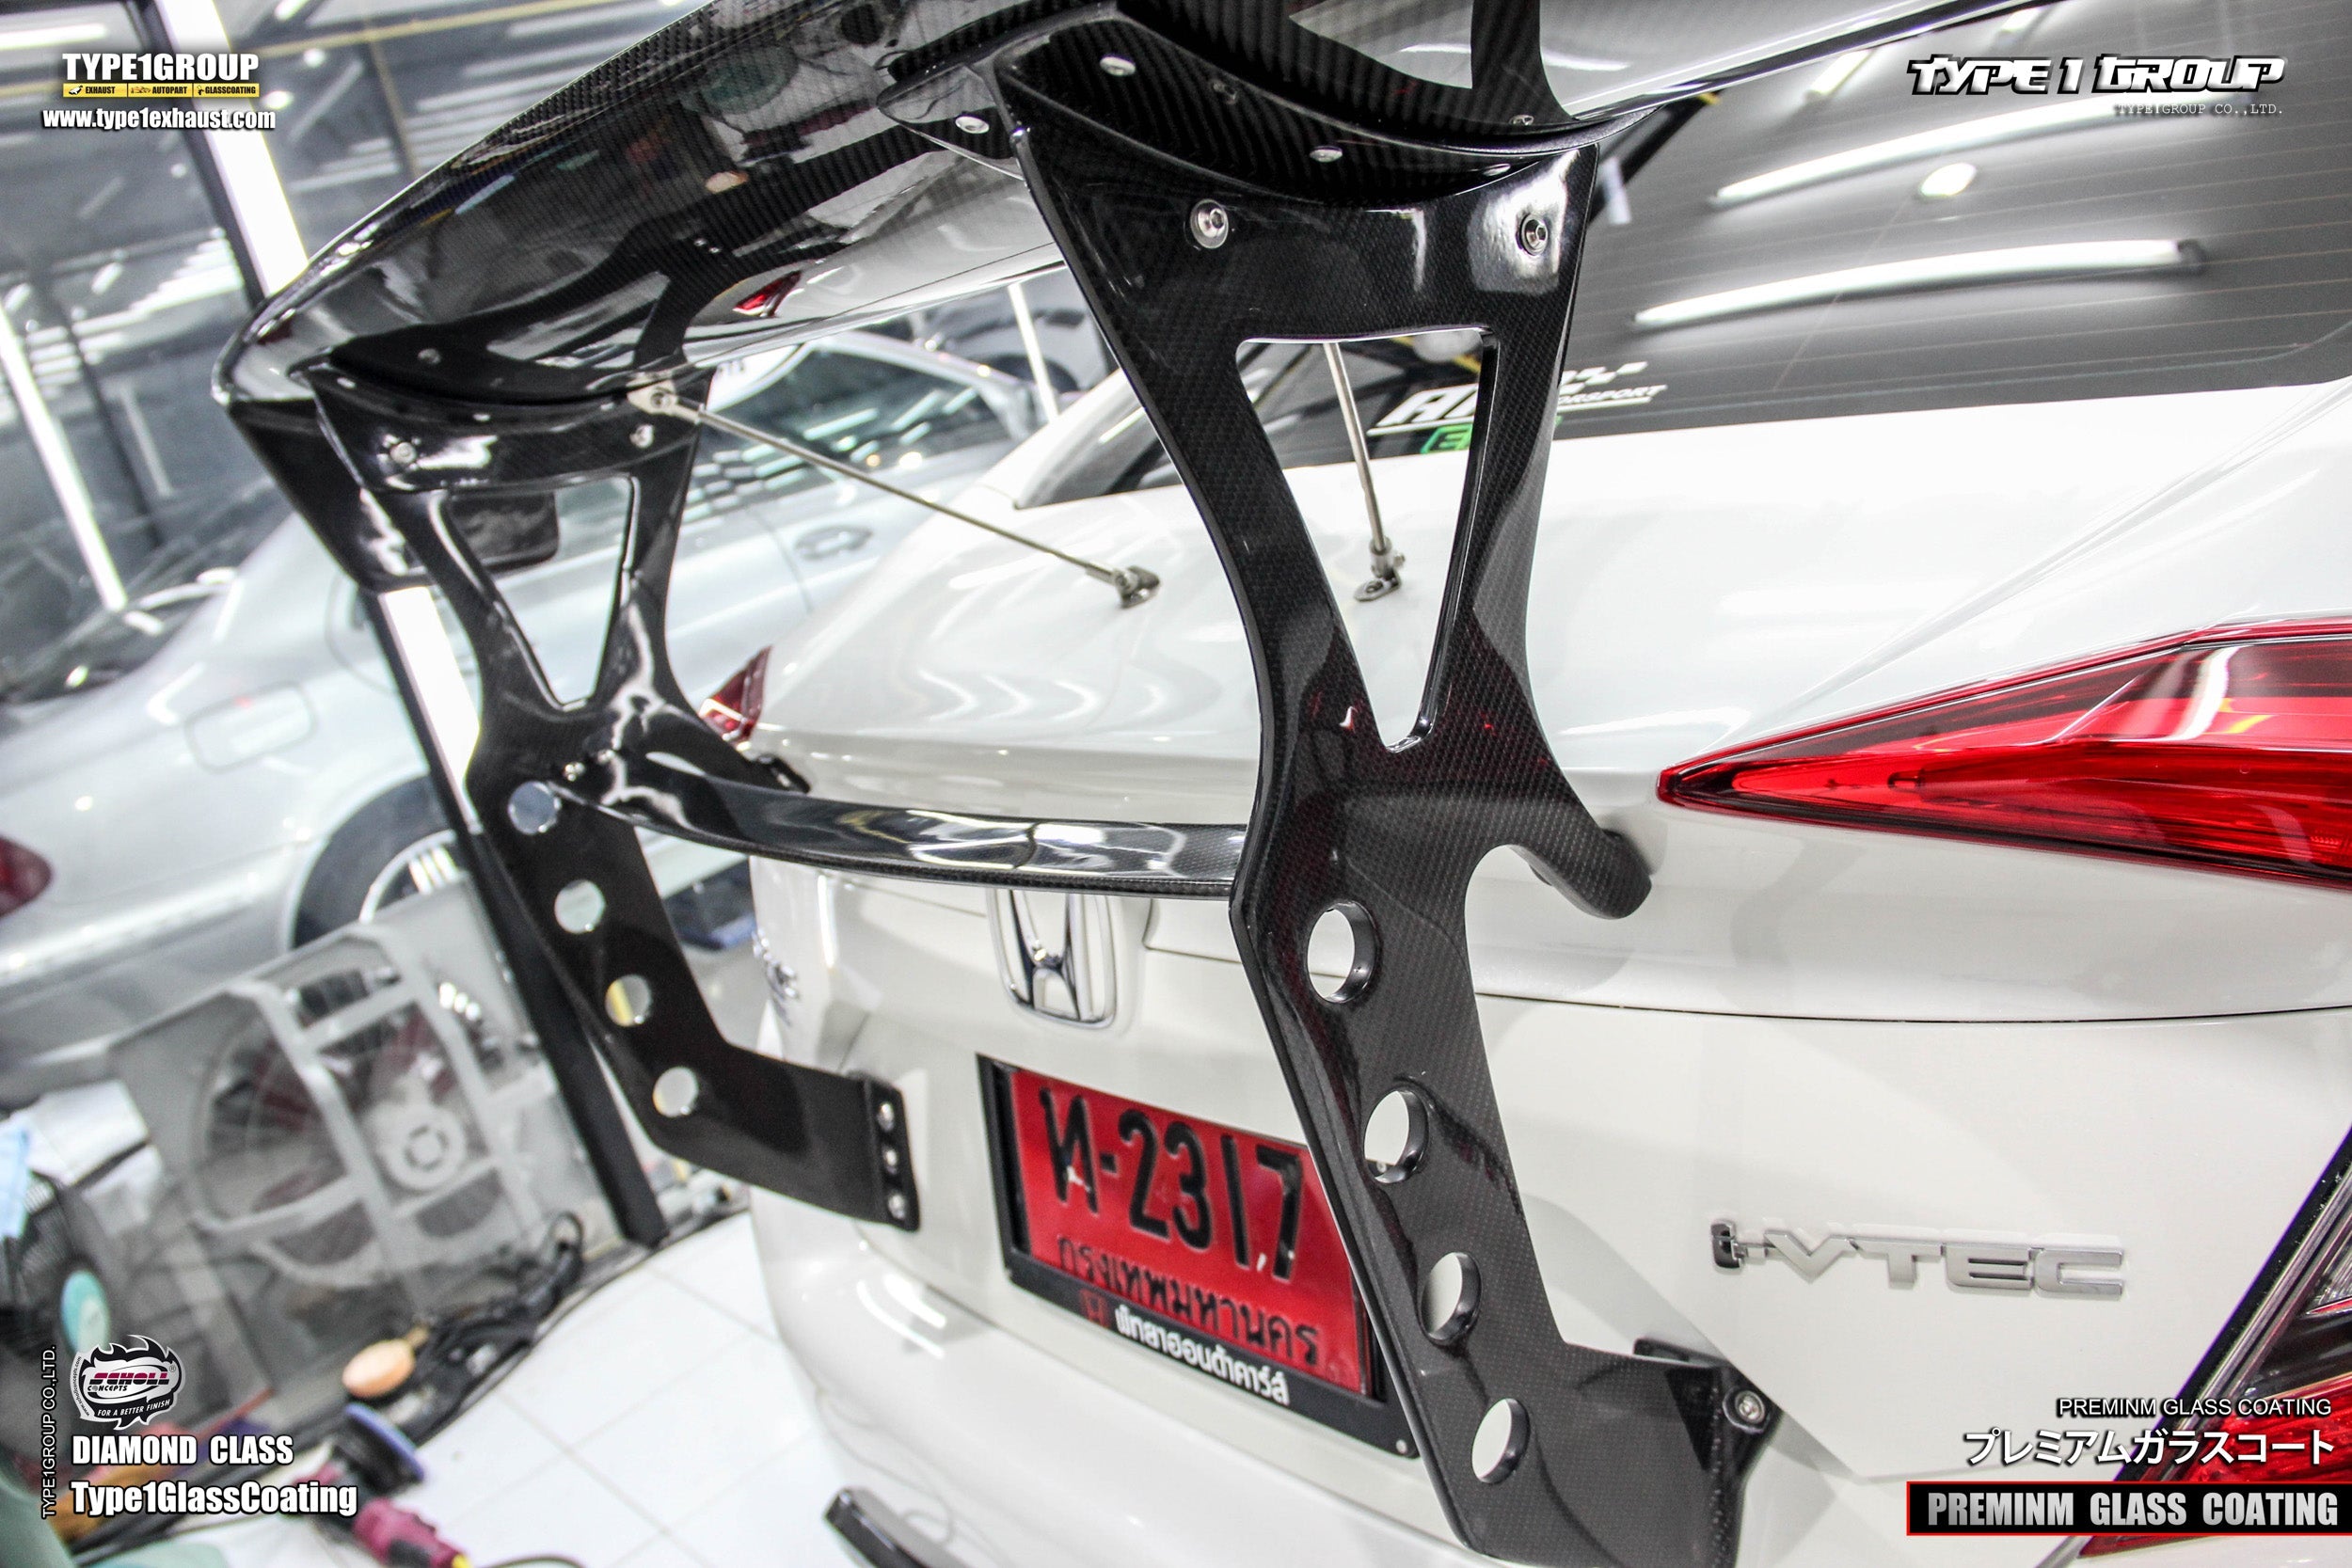 CMST Carbon Fiber Rear GT Wing for Honda 10th Gen Civic Sedan